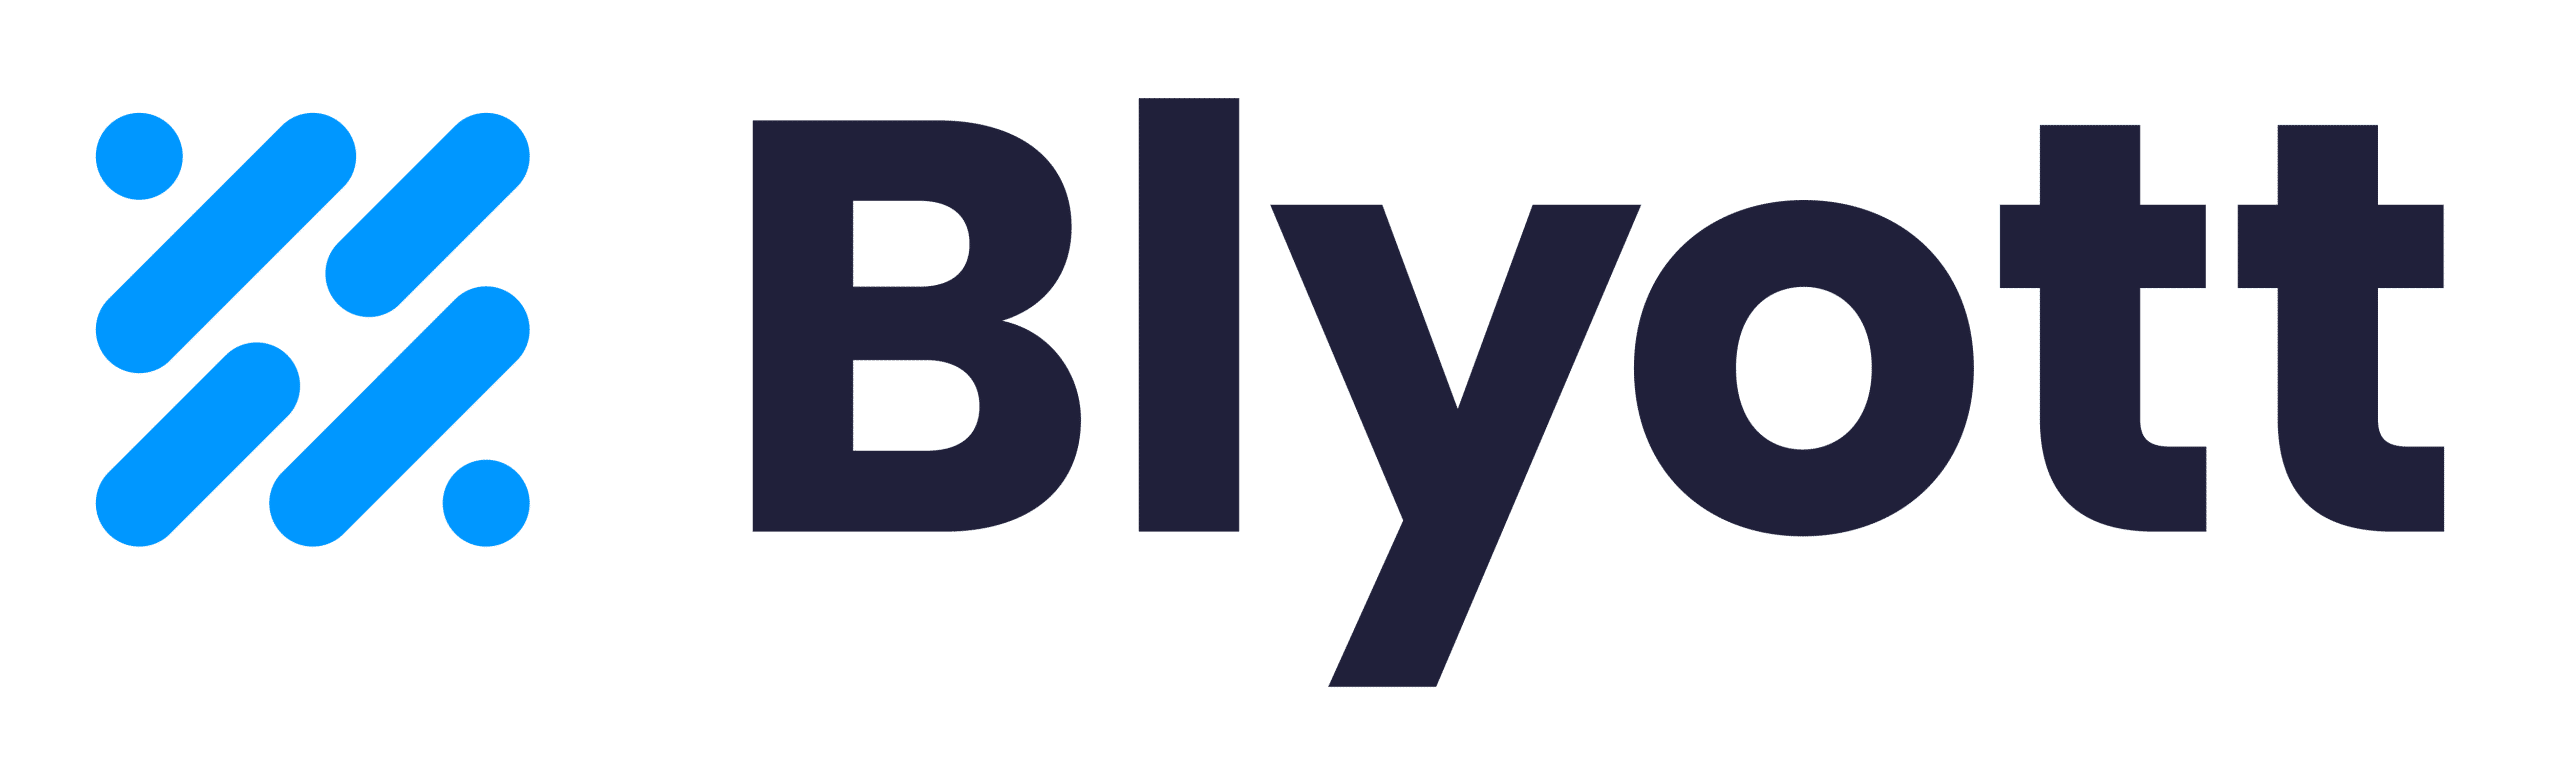 logo_Blyott.png